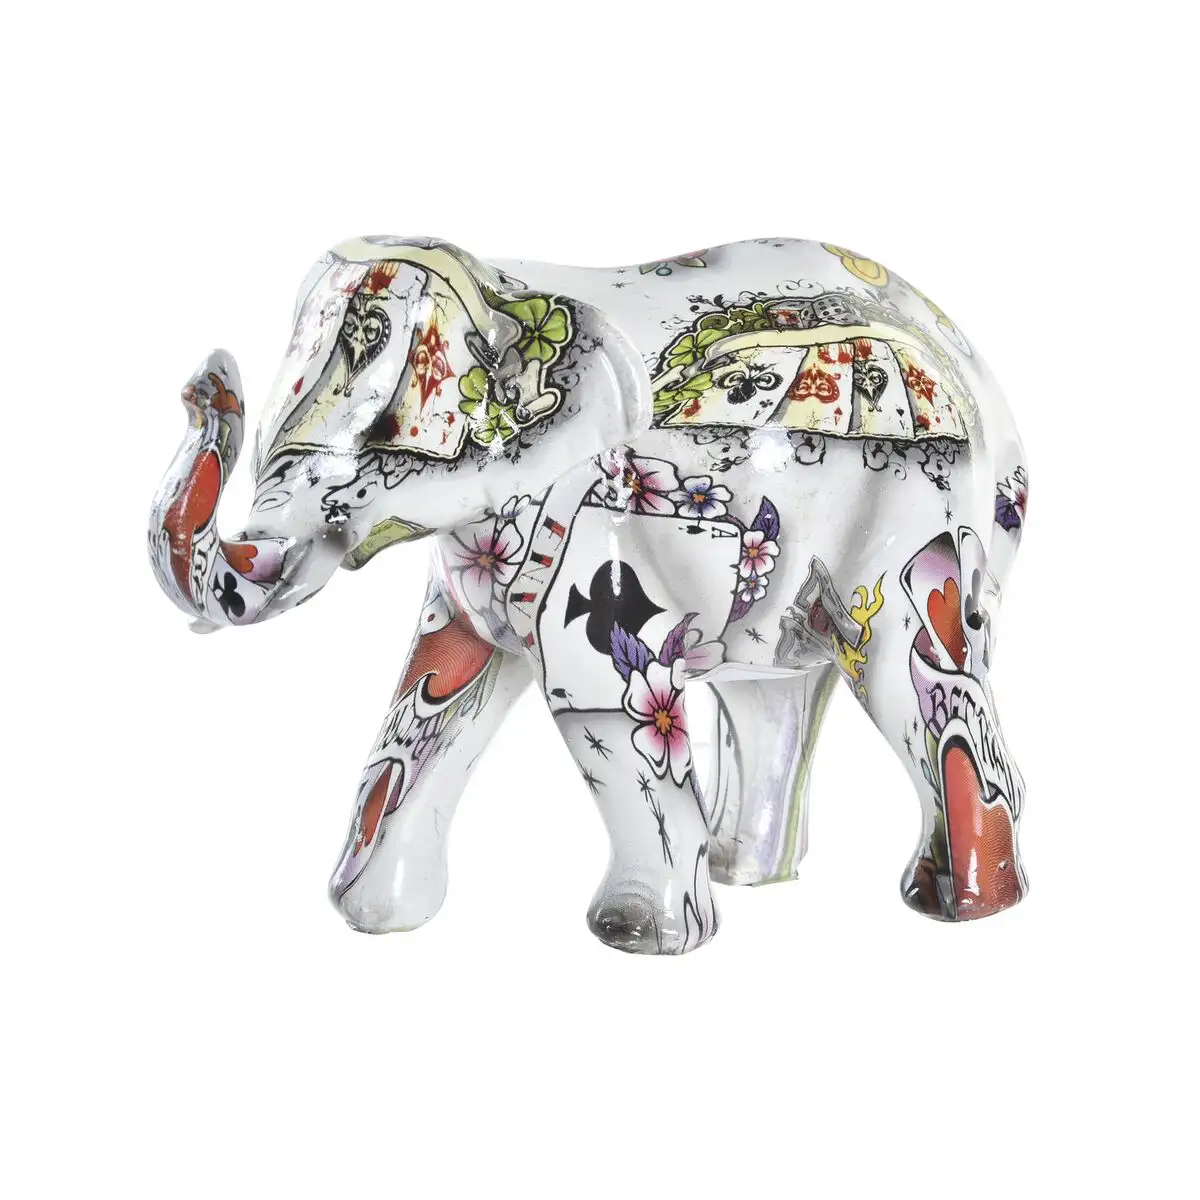 Figurine decorative dkd home decor blanc multicouleur elephant colonial 11 x 5 x 9 cm_3863. Bienvenue chez DIAYTAR SENEGAL - Où Choisir est une Invitation au Voyage. Explorez notre boutique en ligne et découvrez des produits qui vous transportent dans l'univers du Sénégal.